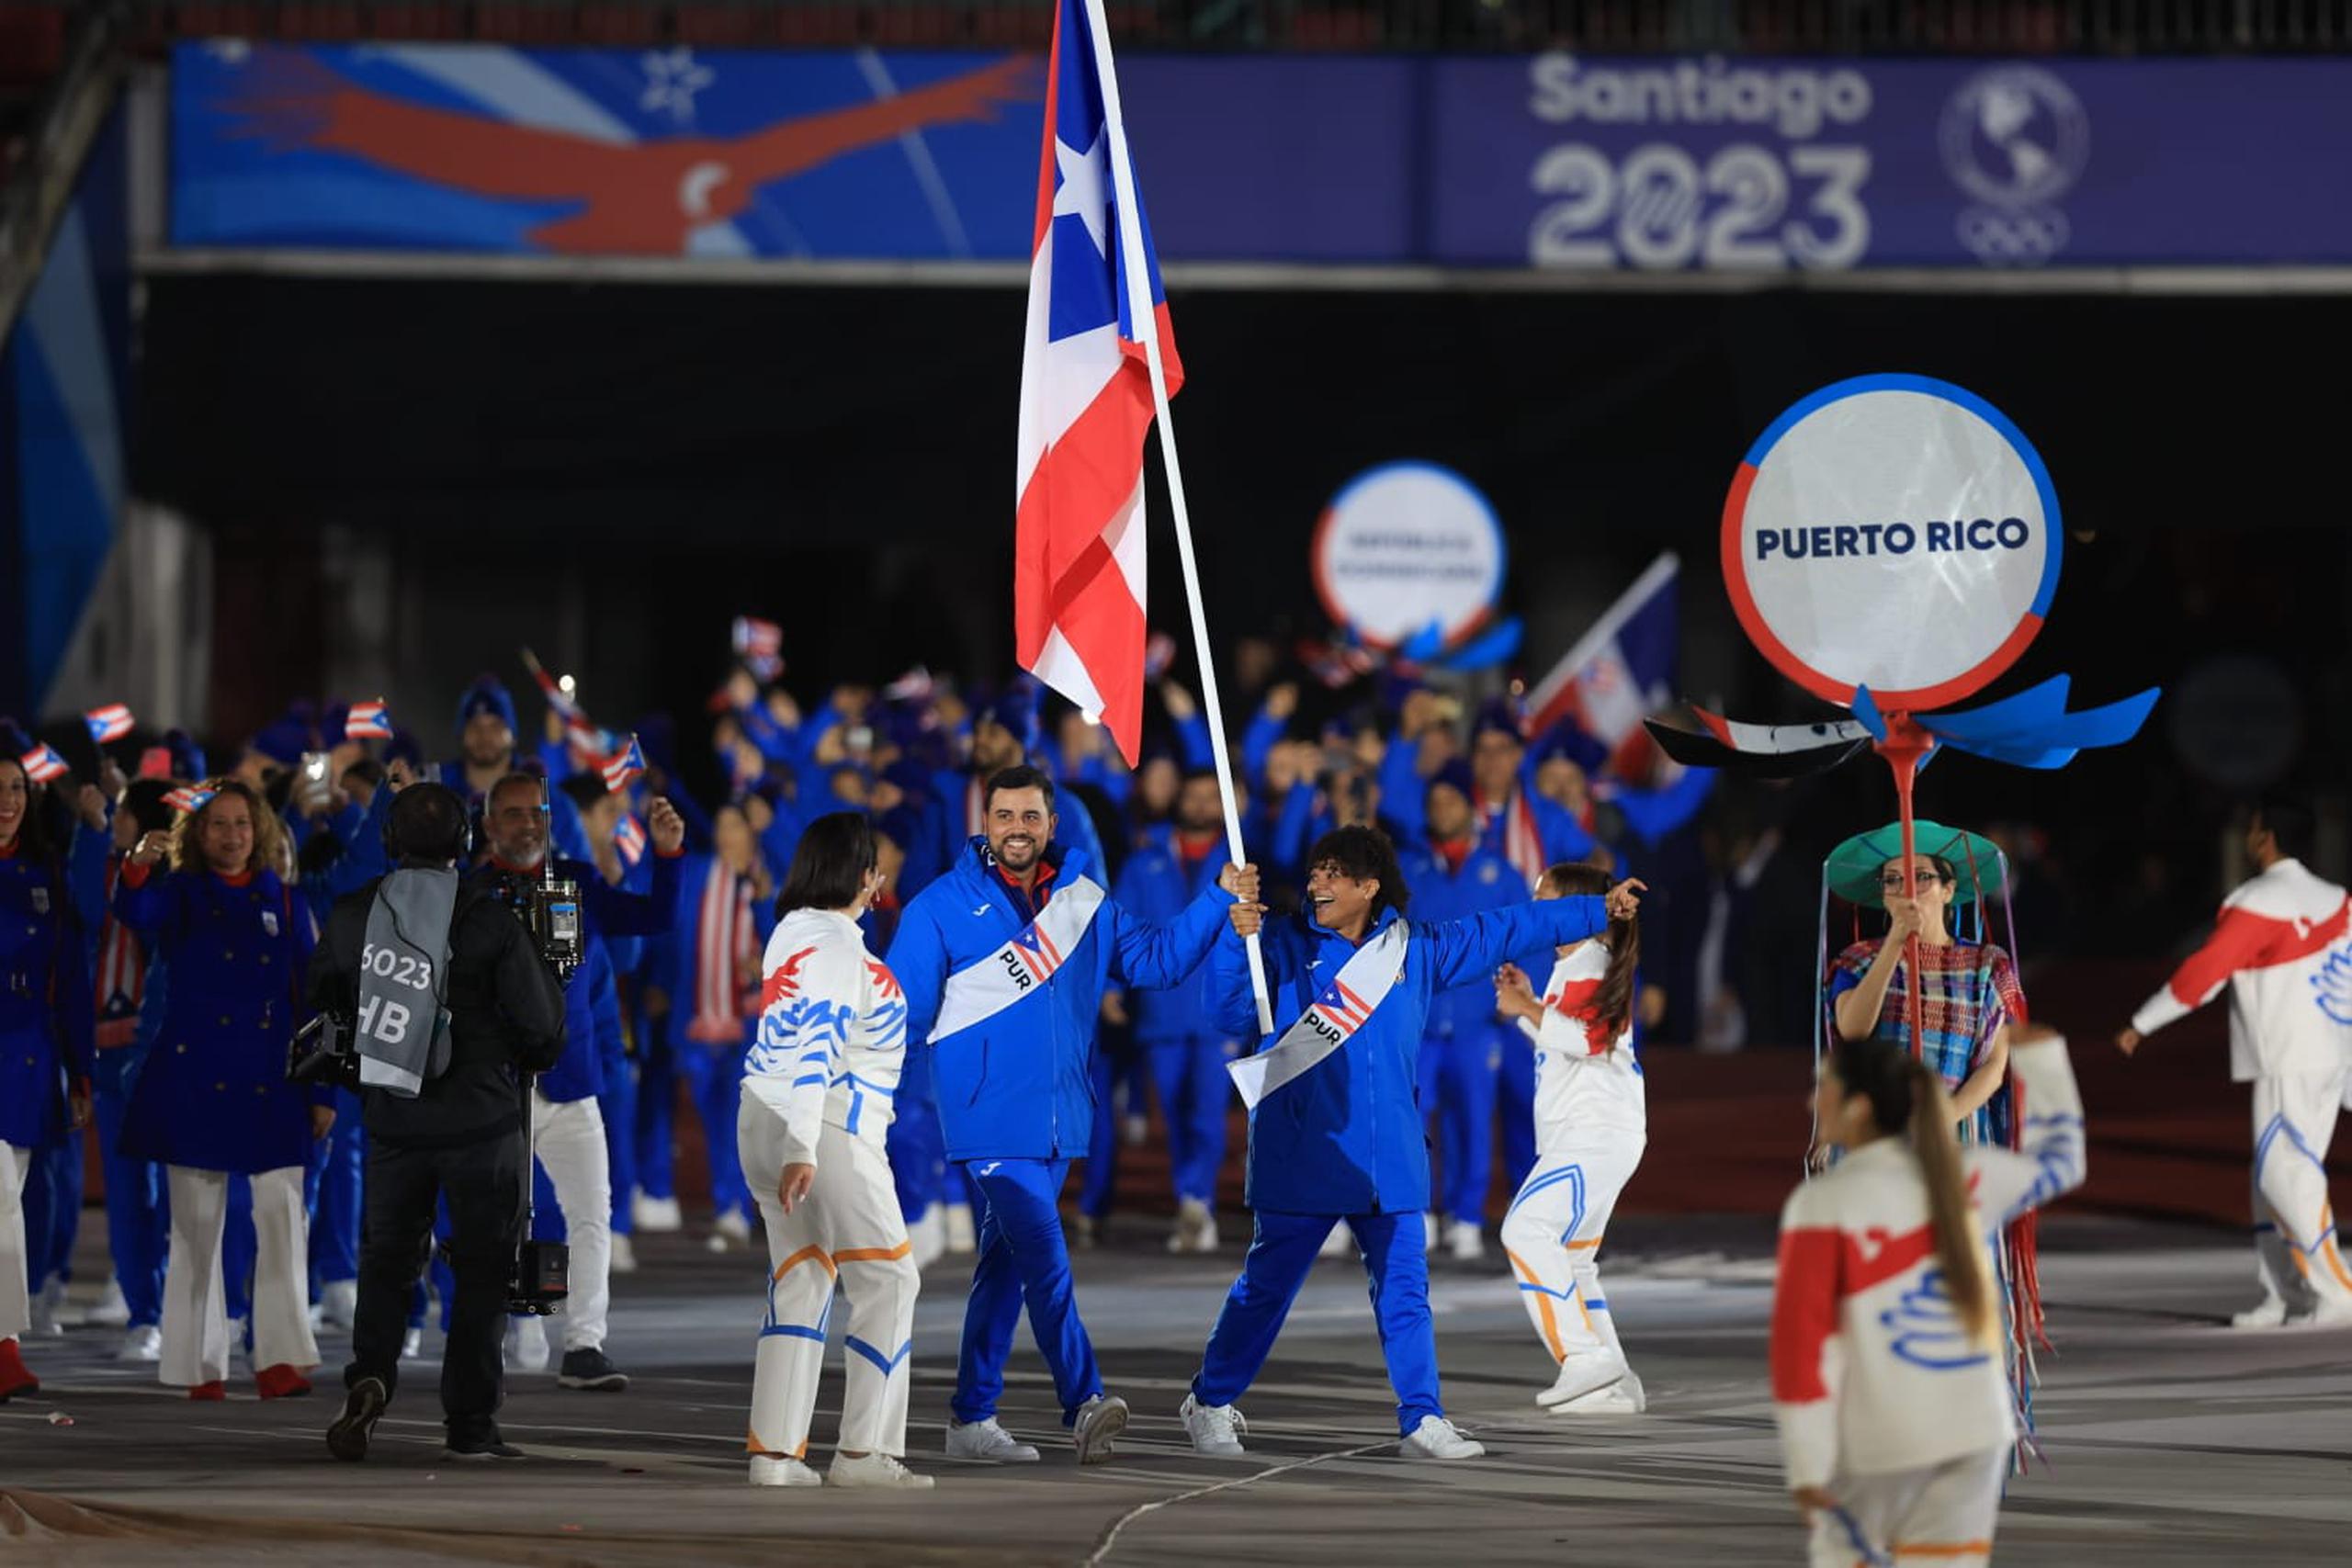 La judoca María Pérez y el arquero Jean Pizarro lideran a la delegación de Puerto Rico durante la ceremonica de inauguración de los Juegos Panamericanos Santiago 2023.